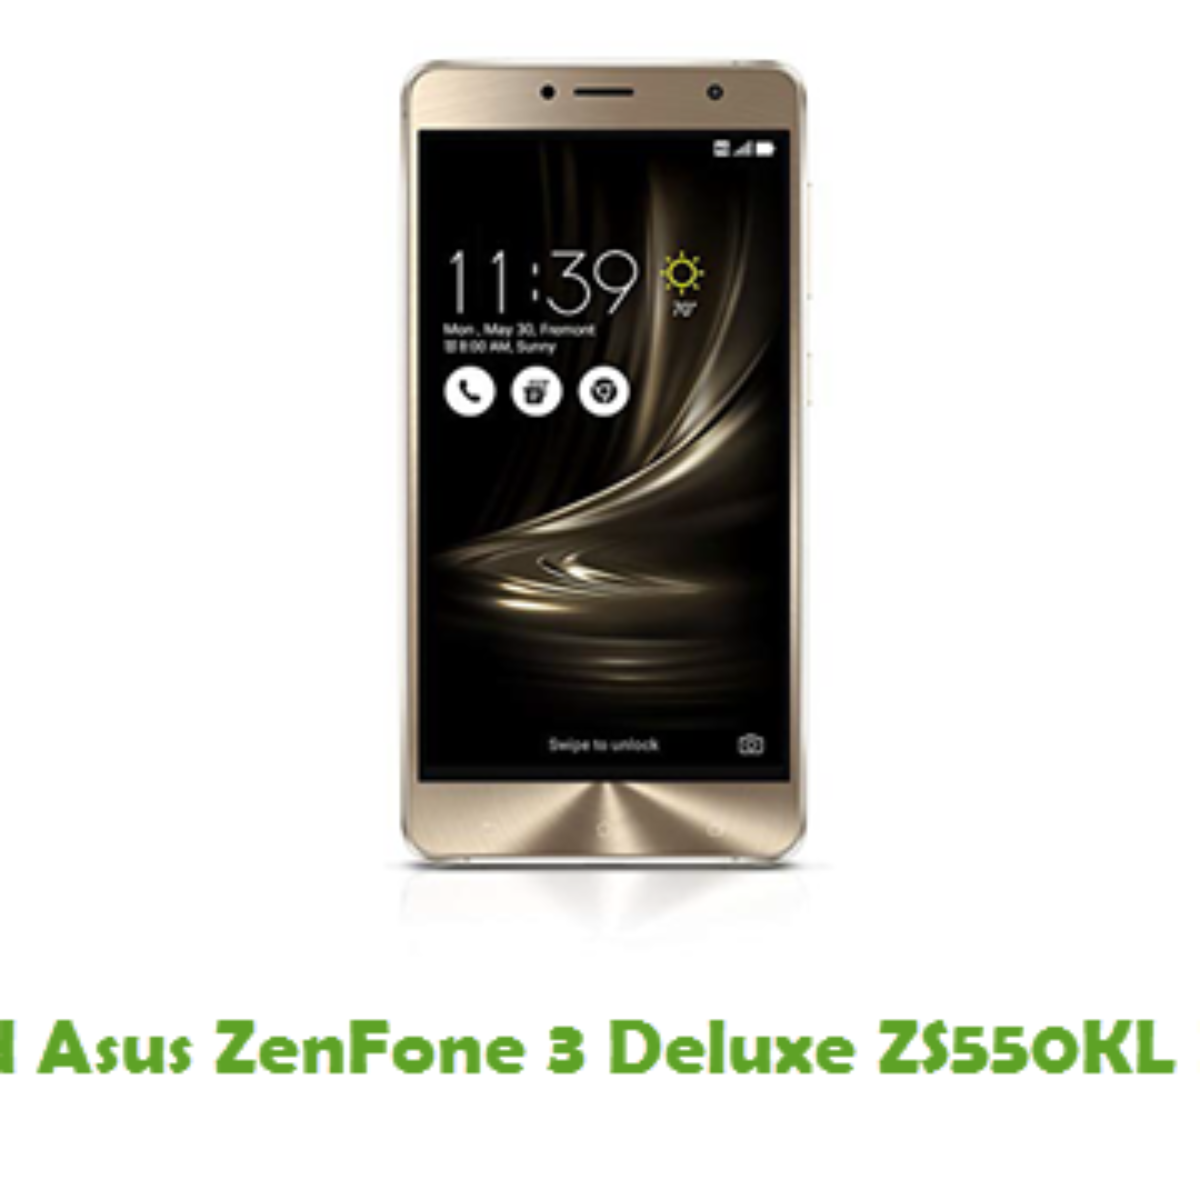 Download Asus Zenfone 3 Deluxe Zs550kl Firmware Stock Rom Files